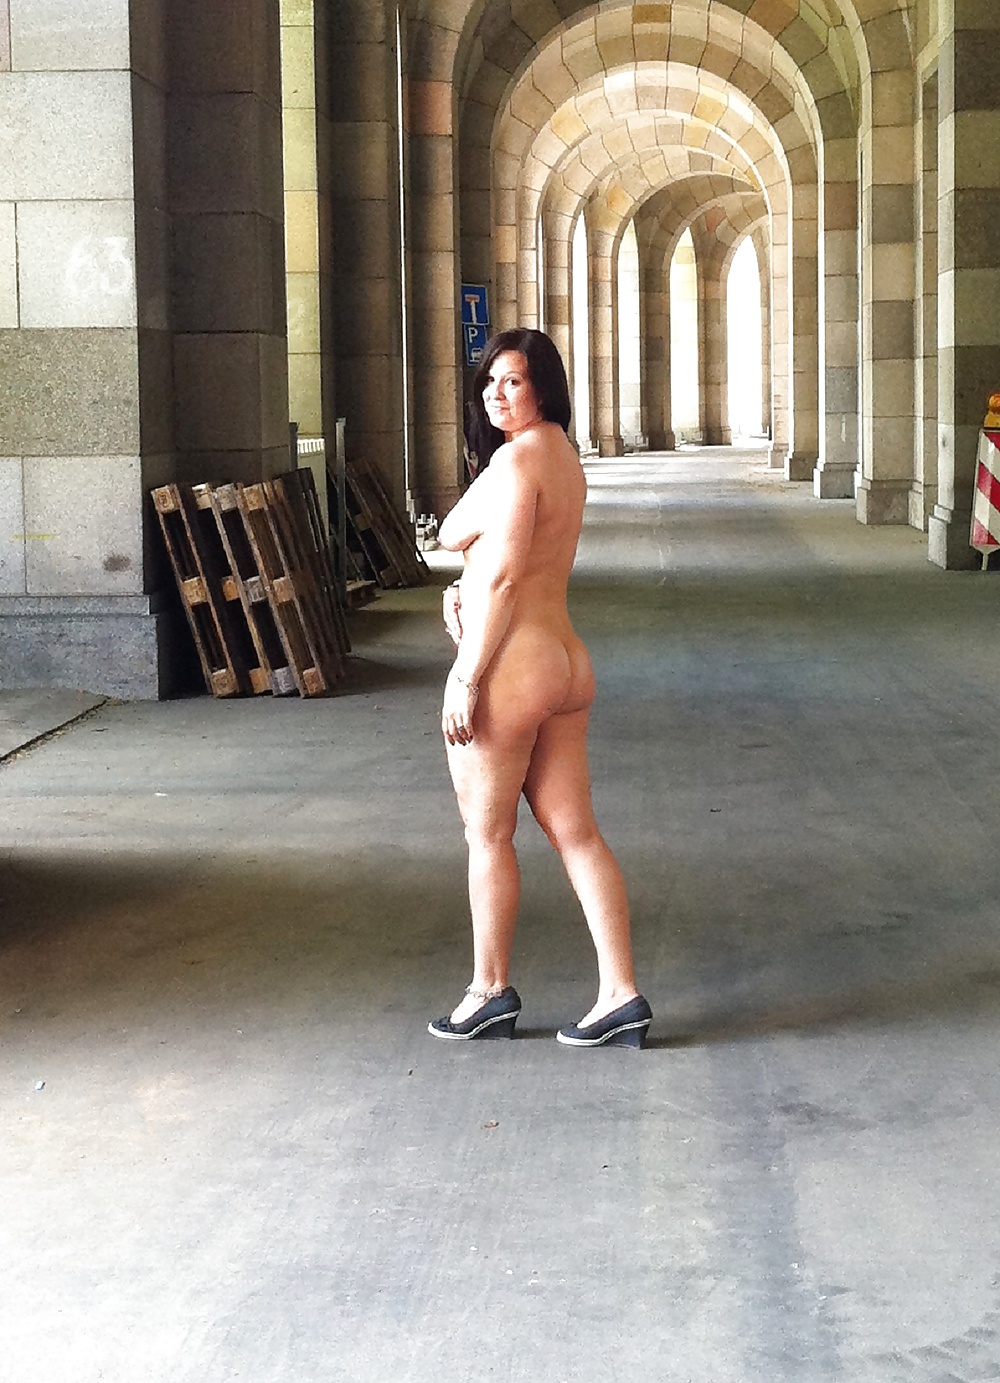 Bitch Naked In Public - Schlampe Nackt Draussen #38755421